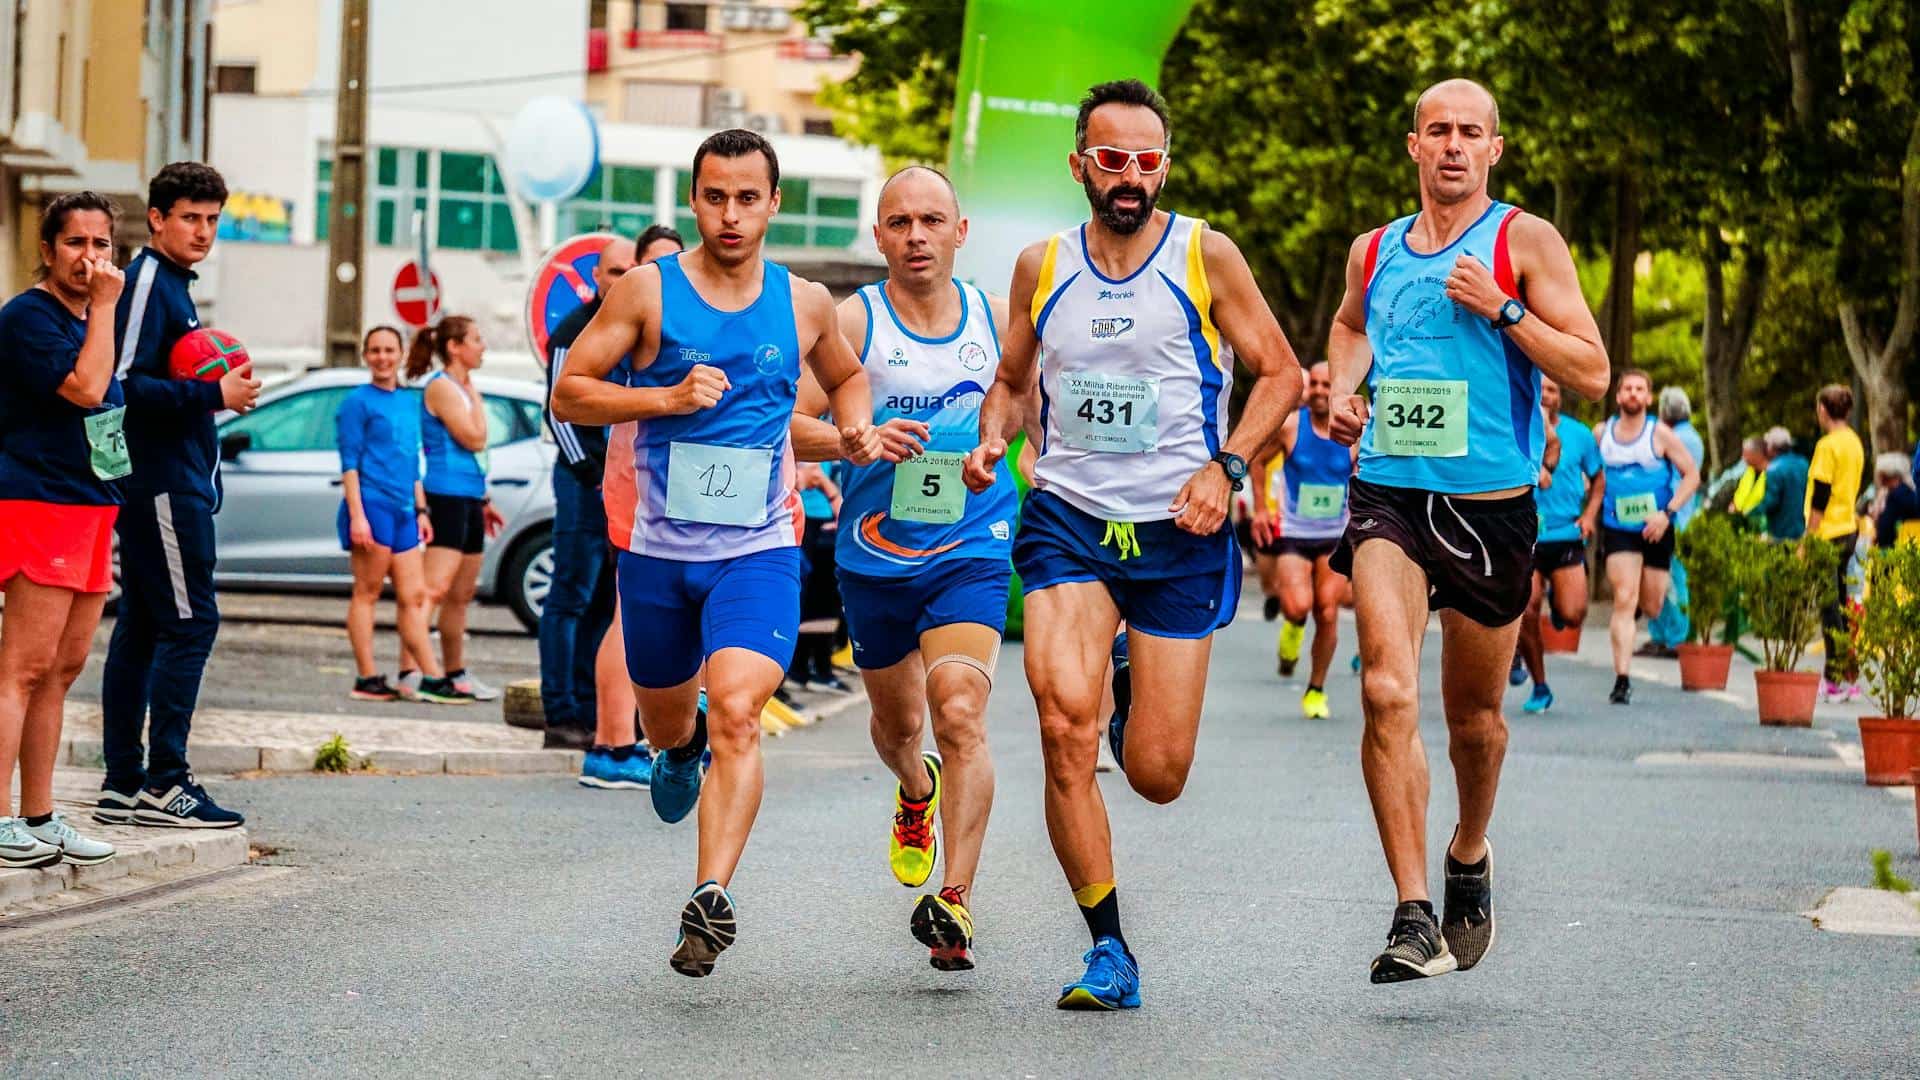 Men running in a marathon